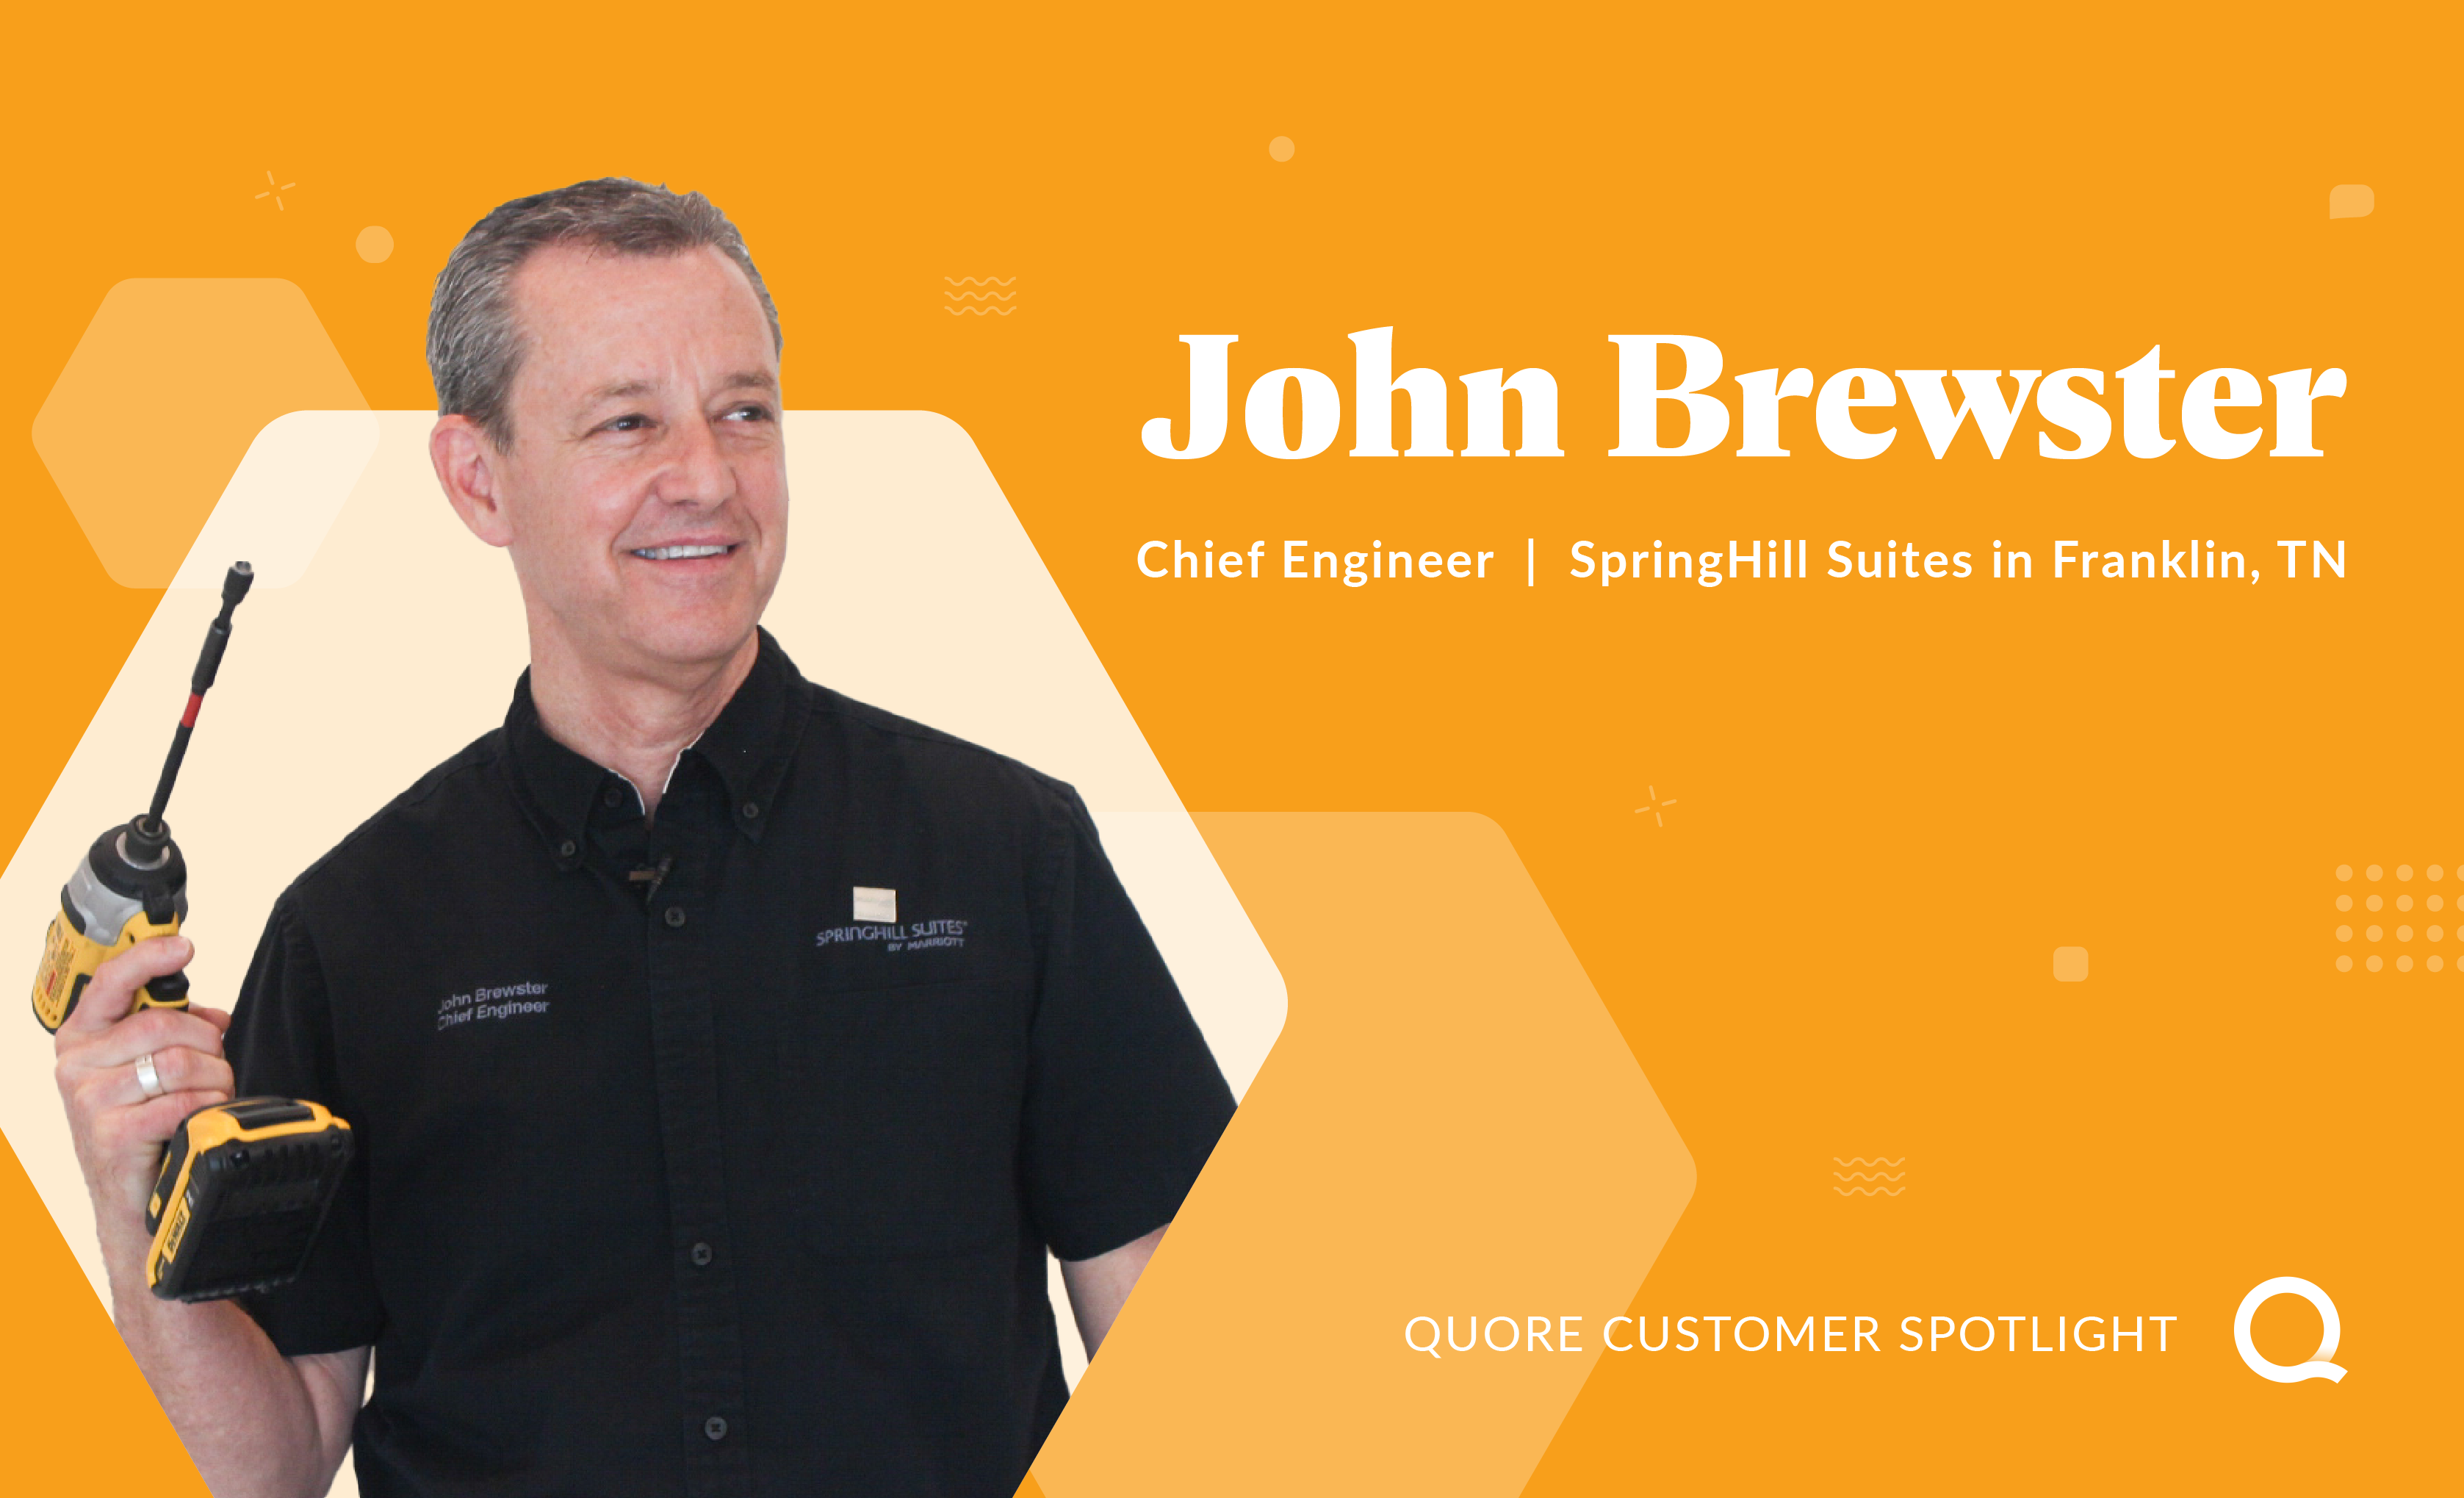 Customer Spotlight: John Brewster, Chief Engineer